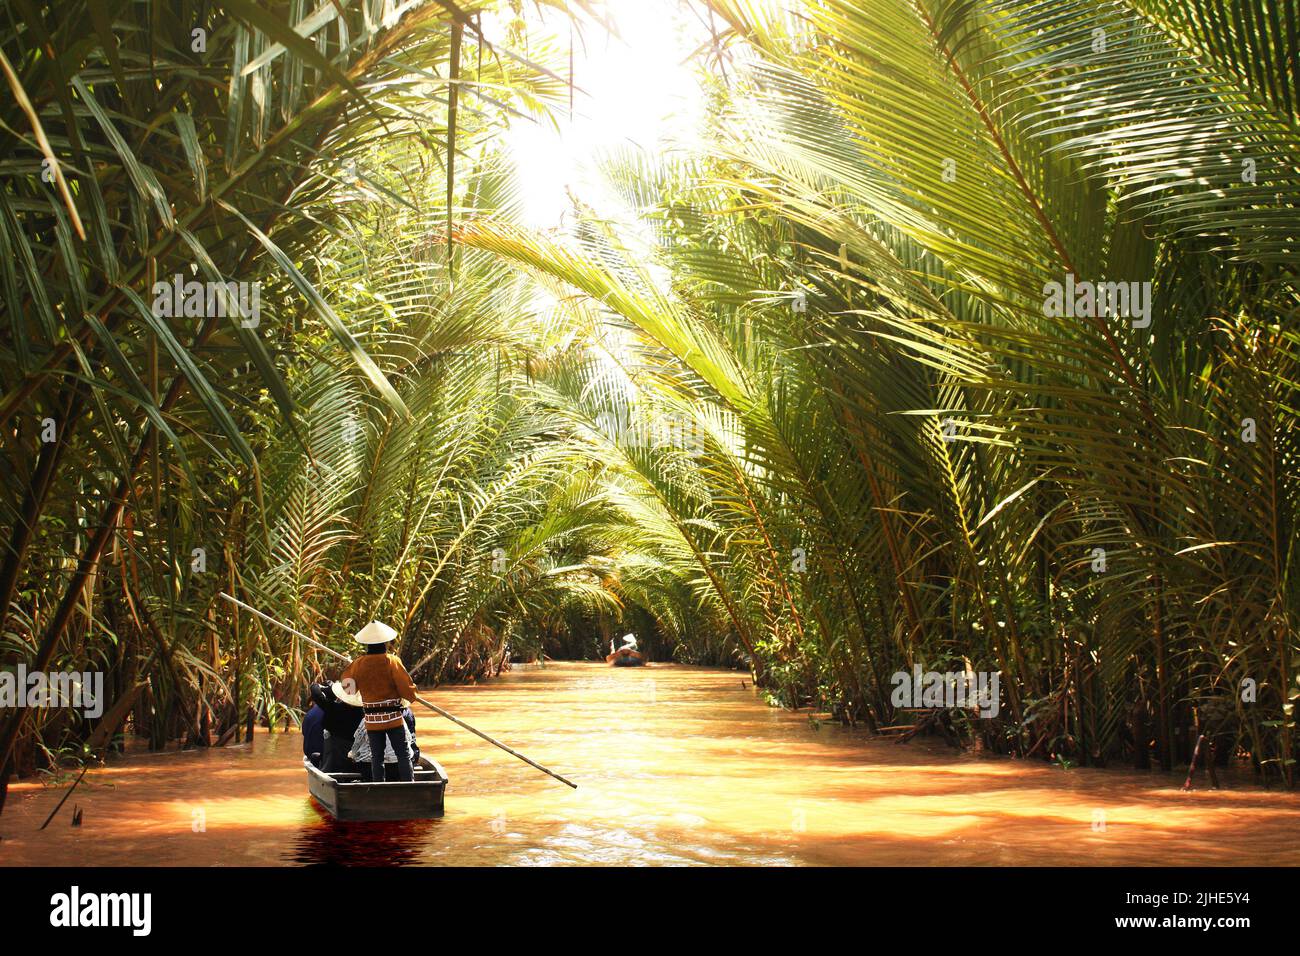 Personnes en bateau dans le delta du Mékong, Vietnam, Asie.Une attraction touristique - promenade en bateau à travers les canaux du delta du Mékong Banque D'Images